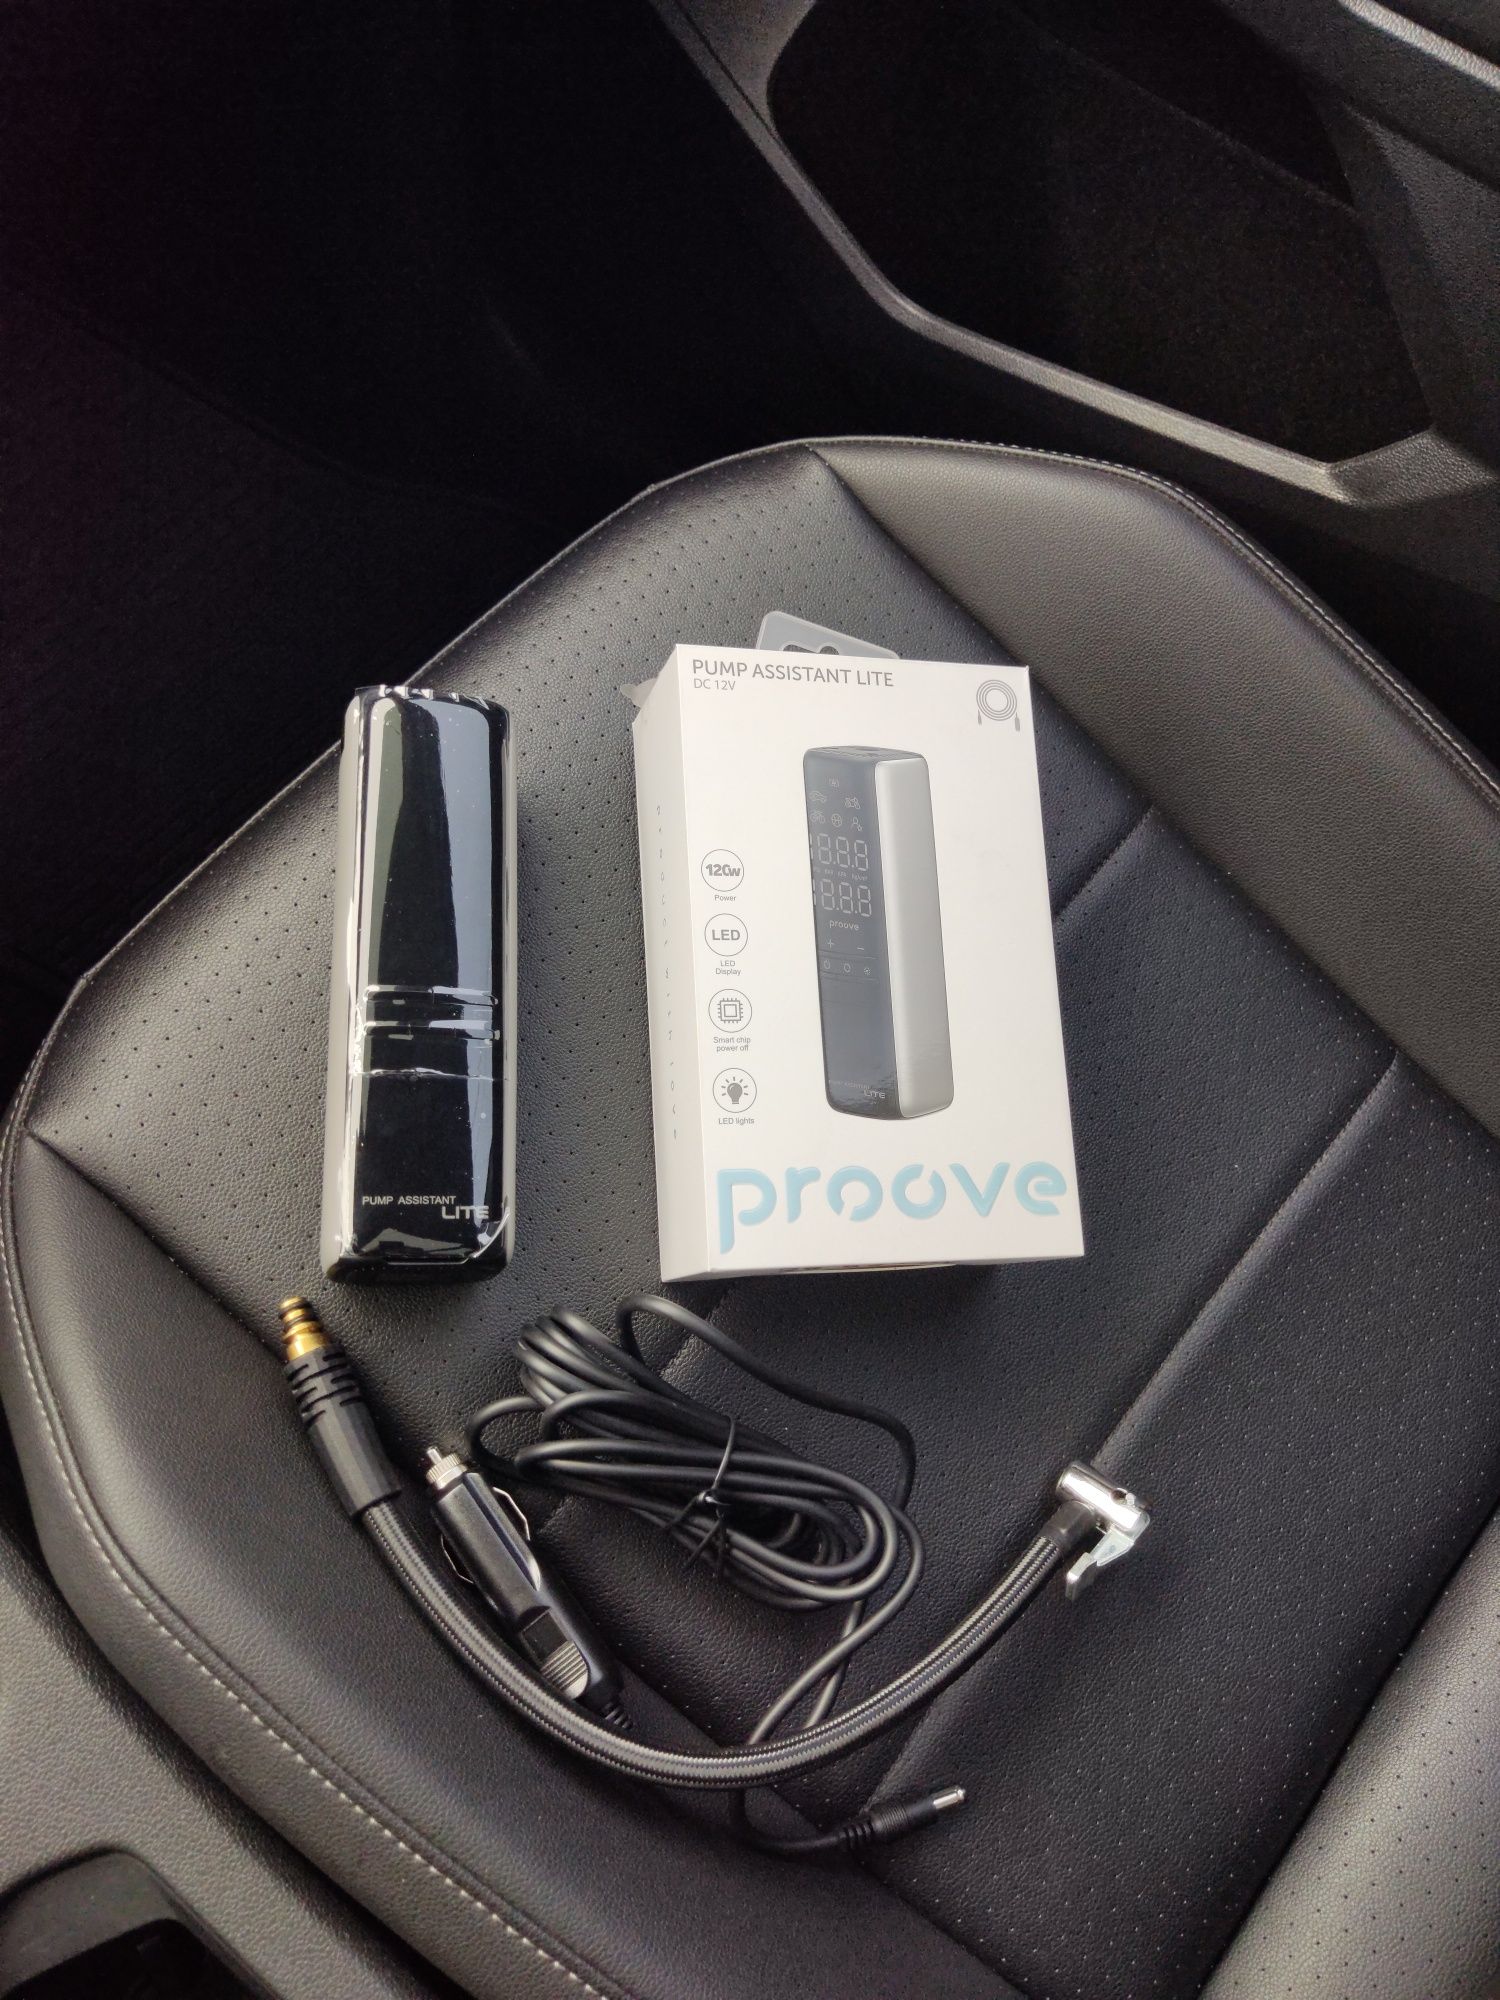 Автомобильный компрессор Proove Pump Assistant Lite